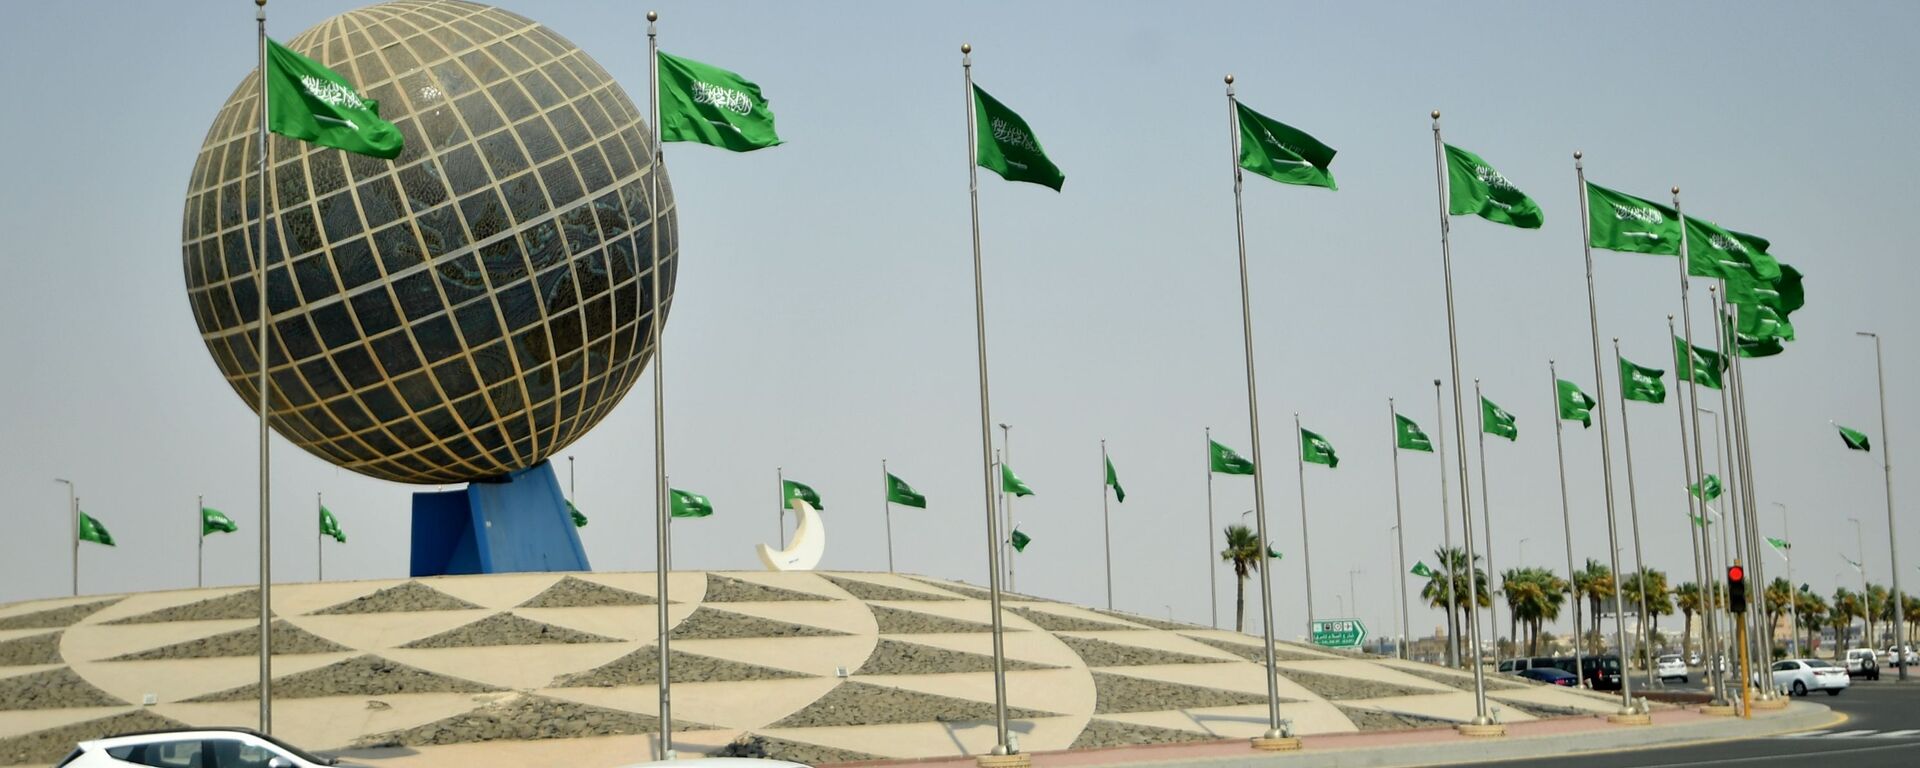 Флаги Саудовской Аравии на одной из улиц города Джидда - Sputnik Узбекистан, 1920, 29.06.2021